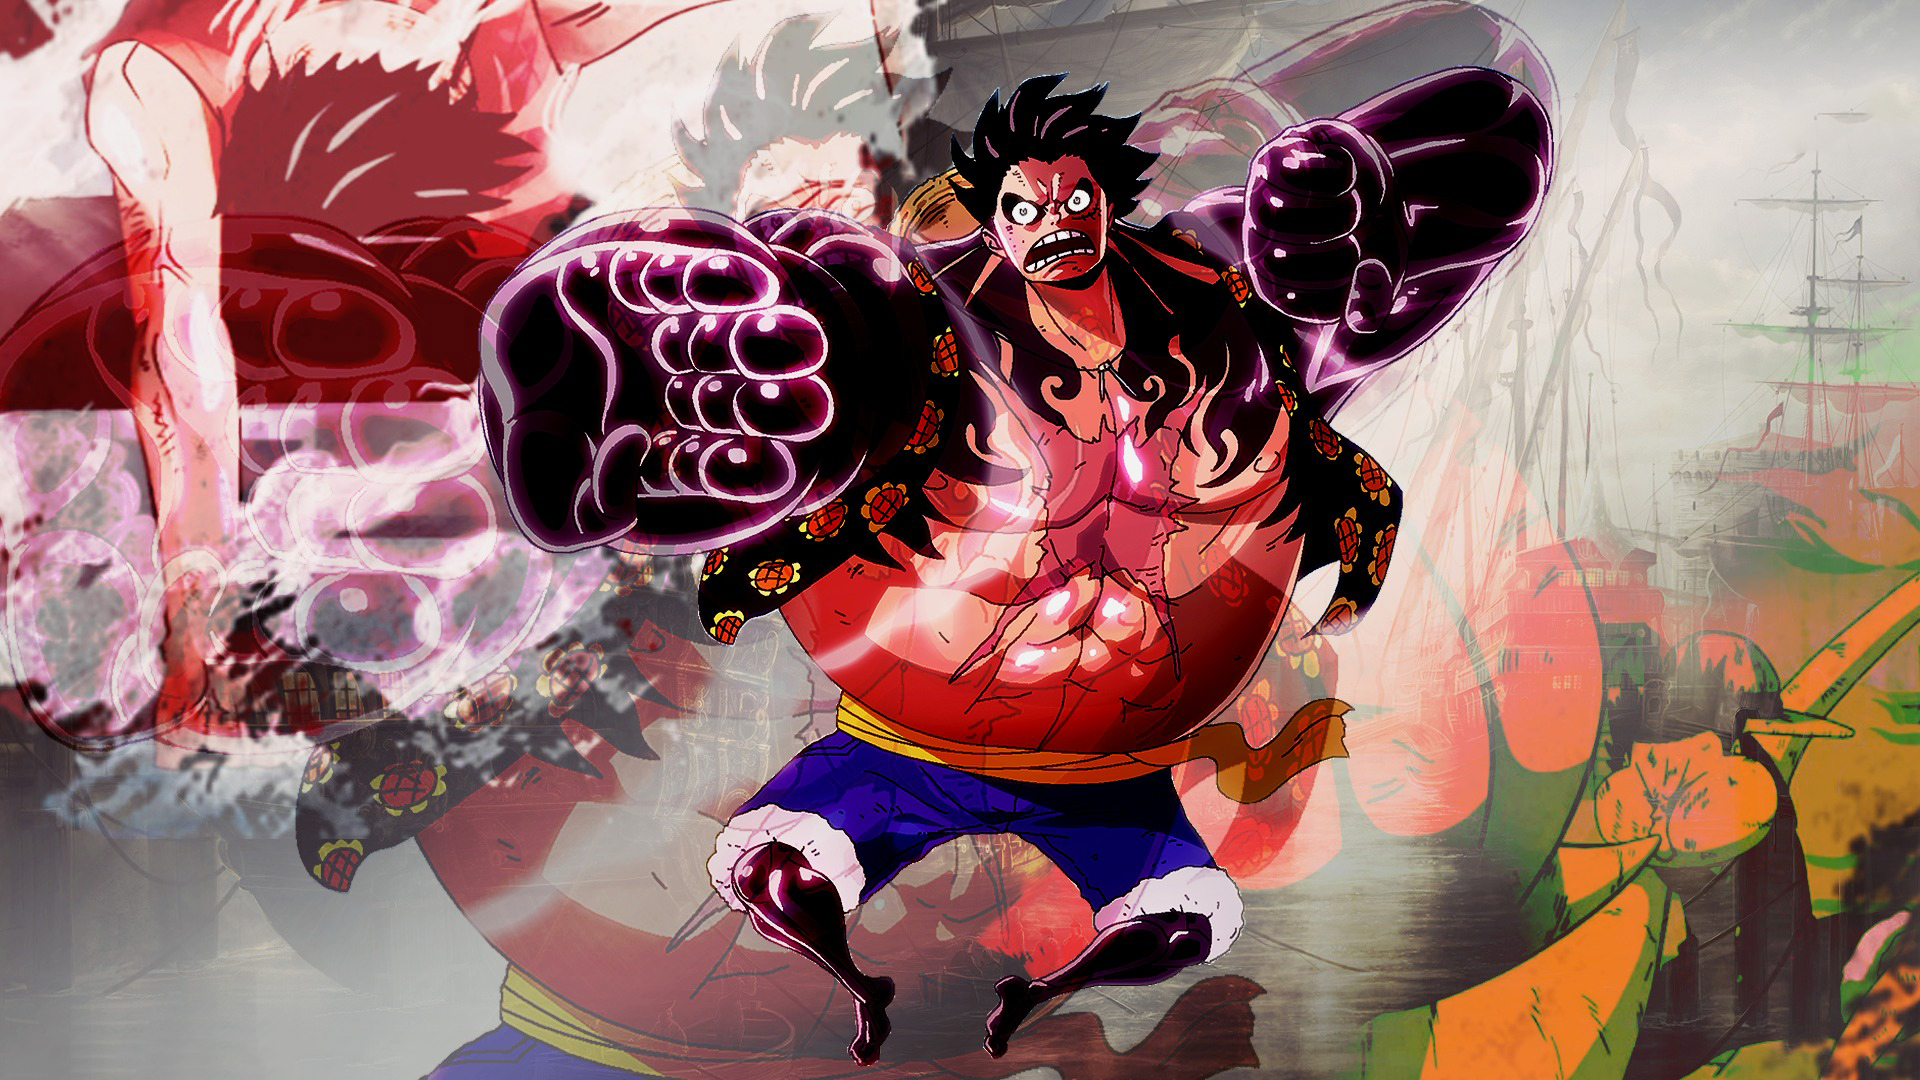 Ảnh Luffy Gear 4: Với khả năng chiến đấu và sức mạnh phi thường của mình, Luffy Gear 4 chắc chắn là một trong những nhân vật được yêu thích nhất trong One Piece. Nhấn vào hình ảnh để xem những hình ảnh đắt giá của Luffy Gear 4 và hòa mình vào thế giới đầy màu sắc và thú vị của anime tuyệt vời này.